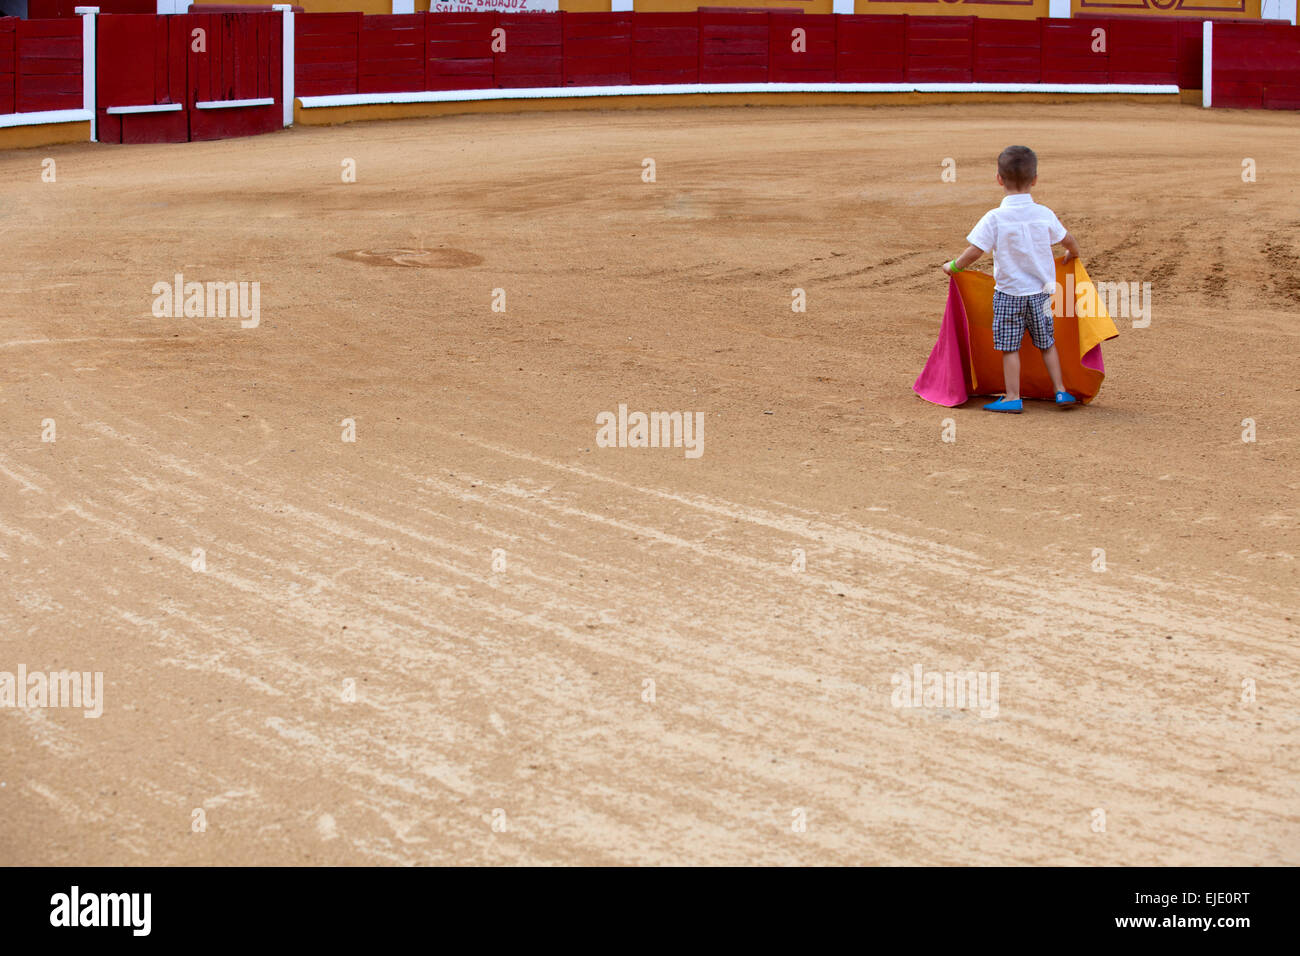 Niño no identificado en la arena pretendiendo realiza una corrida de toros, Badajoz, España Foto de stock